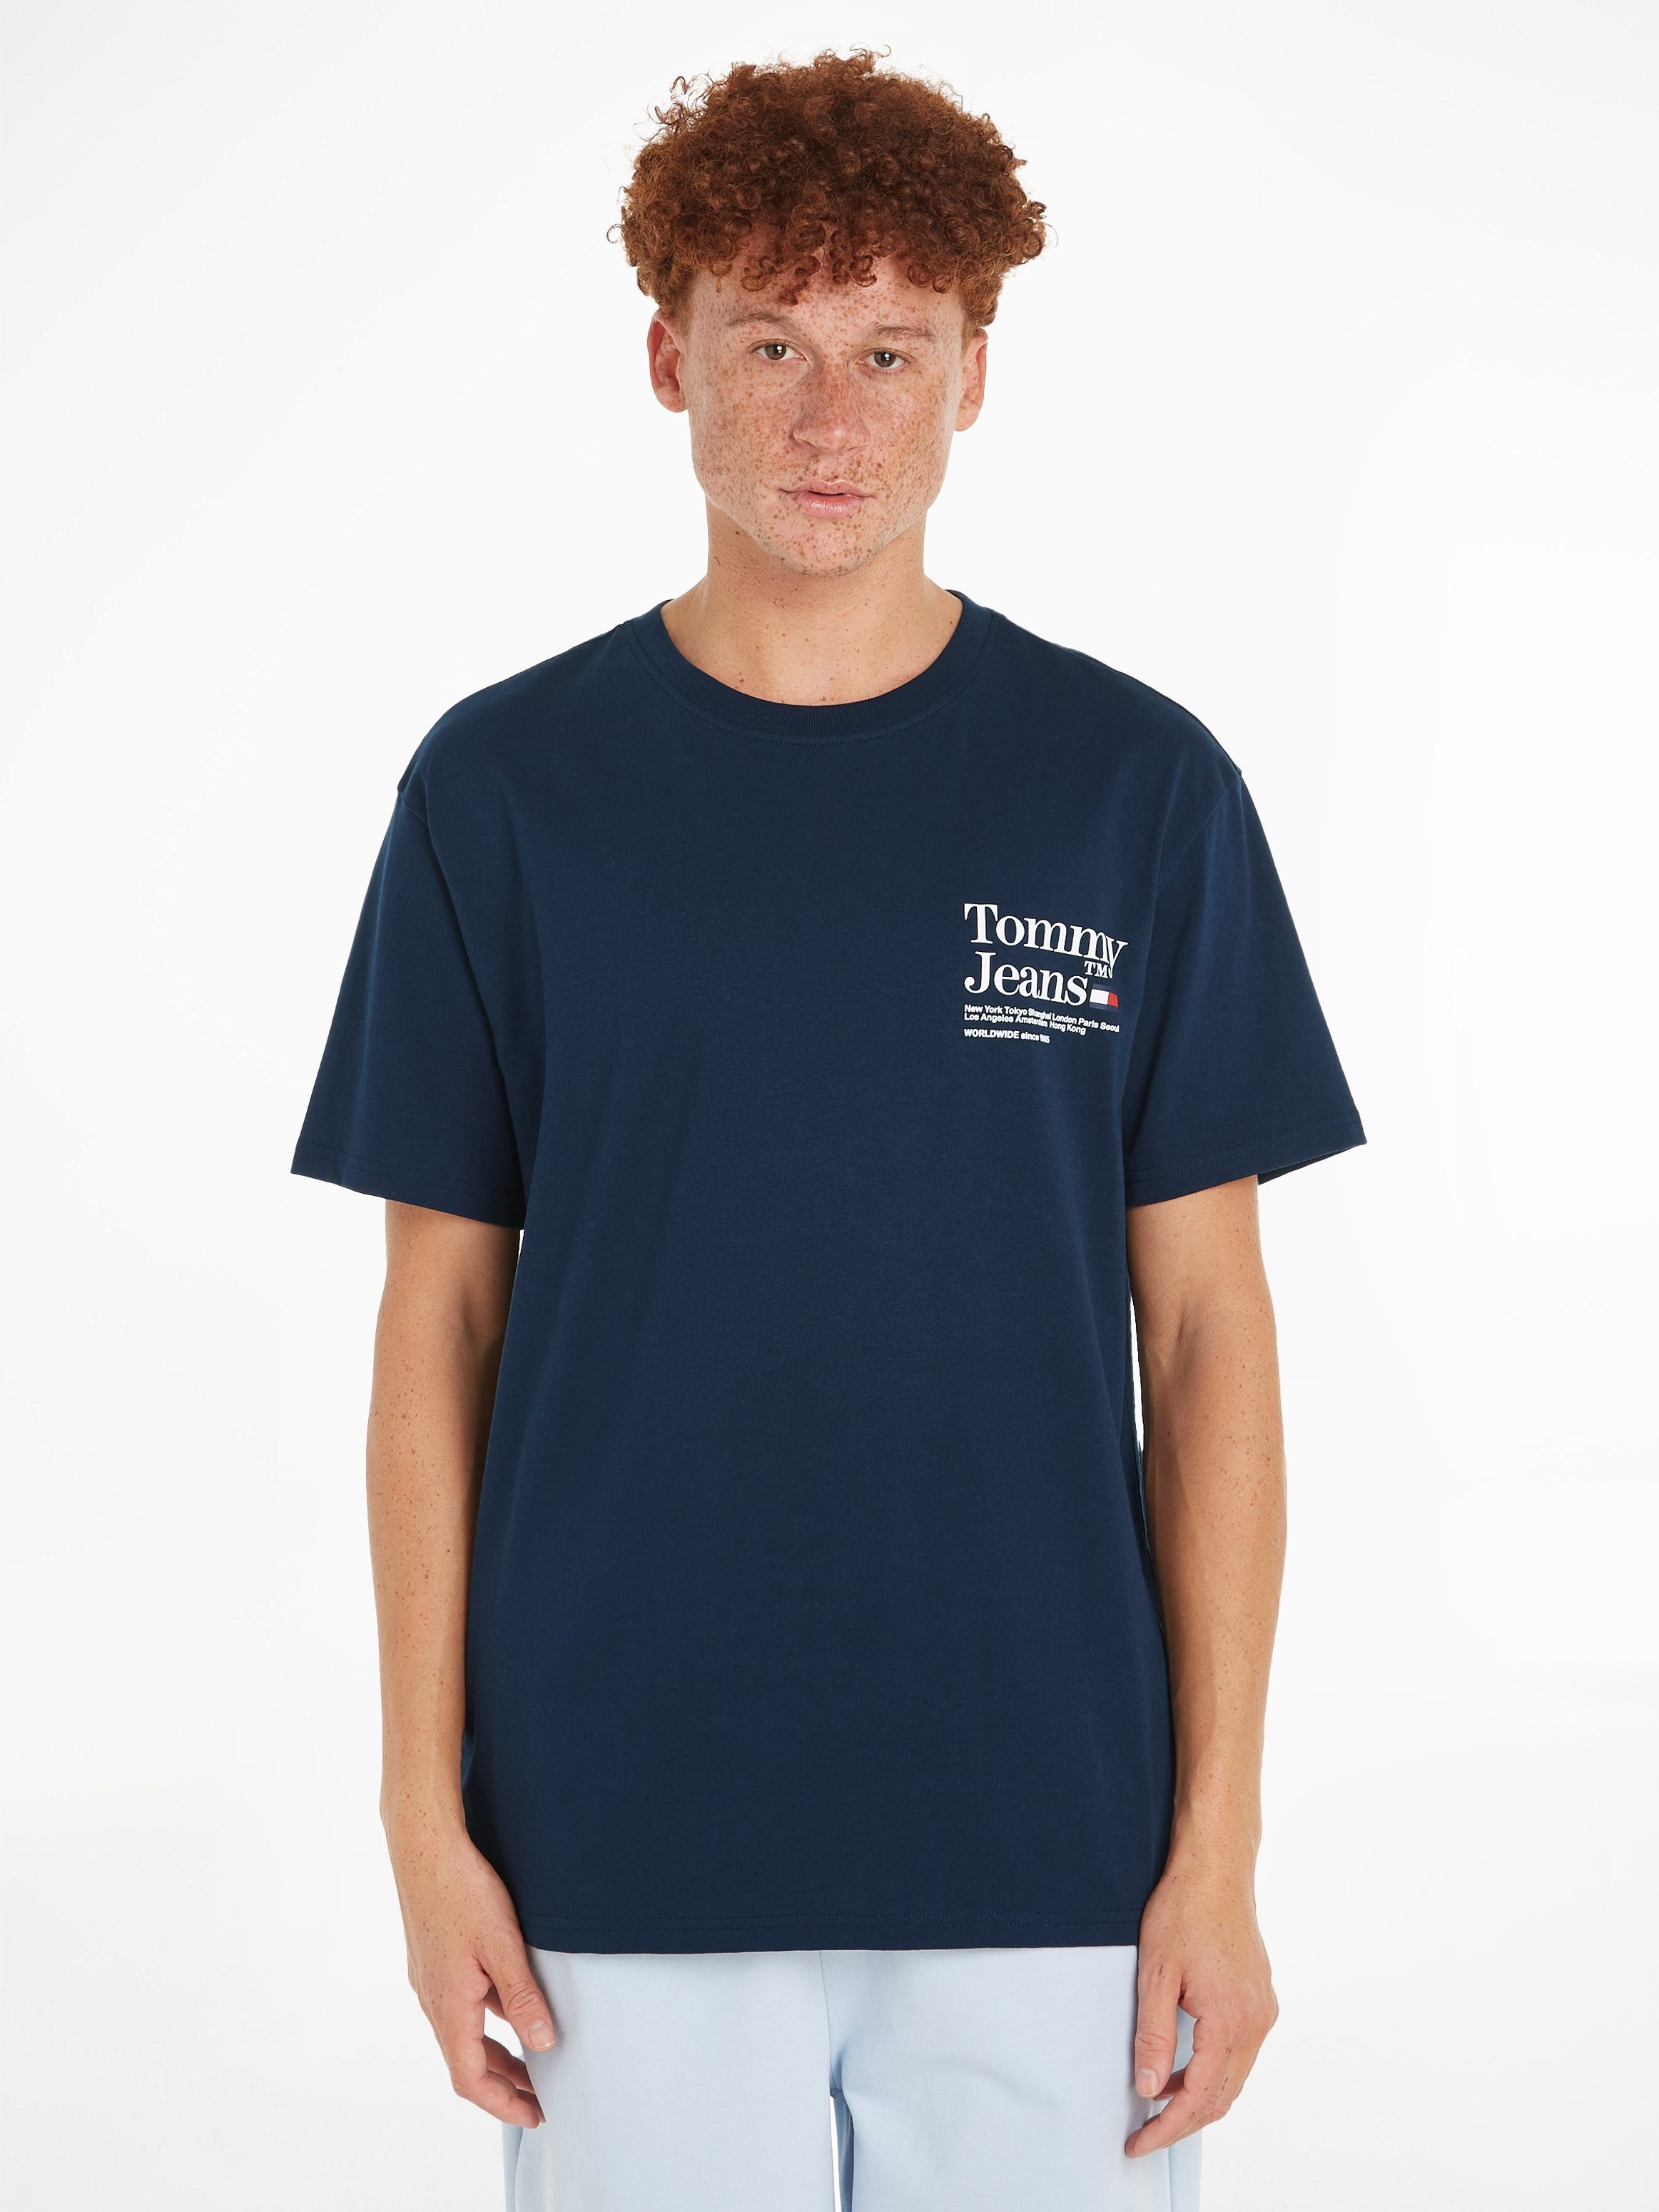 Tommy Jeans T-Shirt TJM REG MODERN TOMMY TM TEE mit großem Aufdruck auf dem Rücken Dark Night Navy